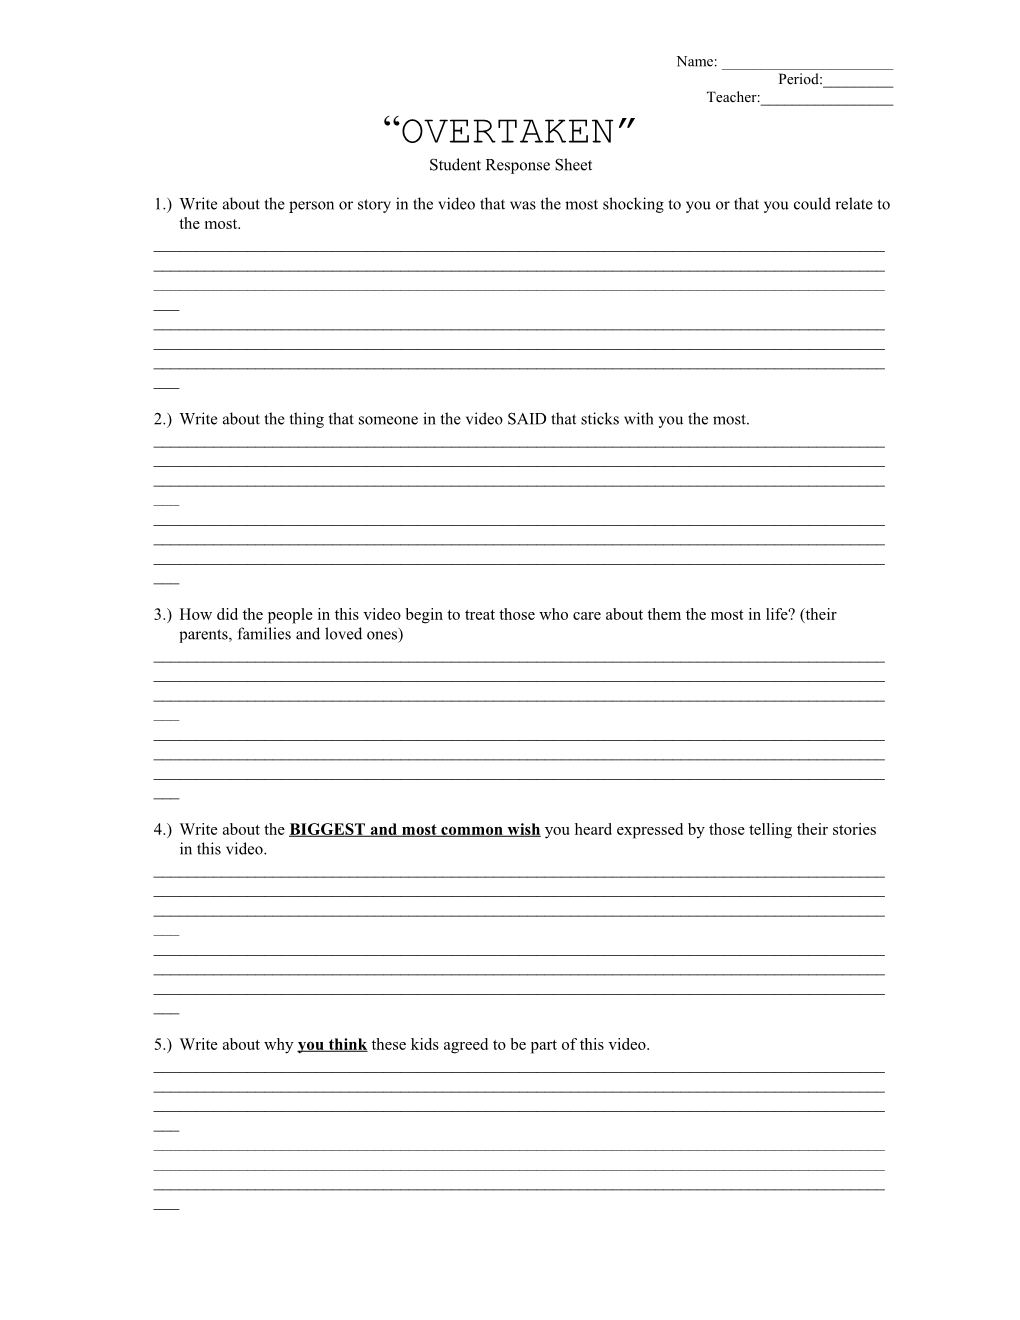 Student Response Sheet